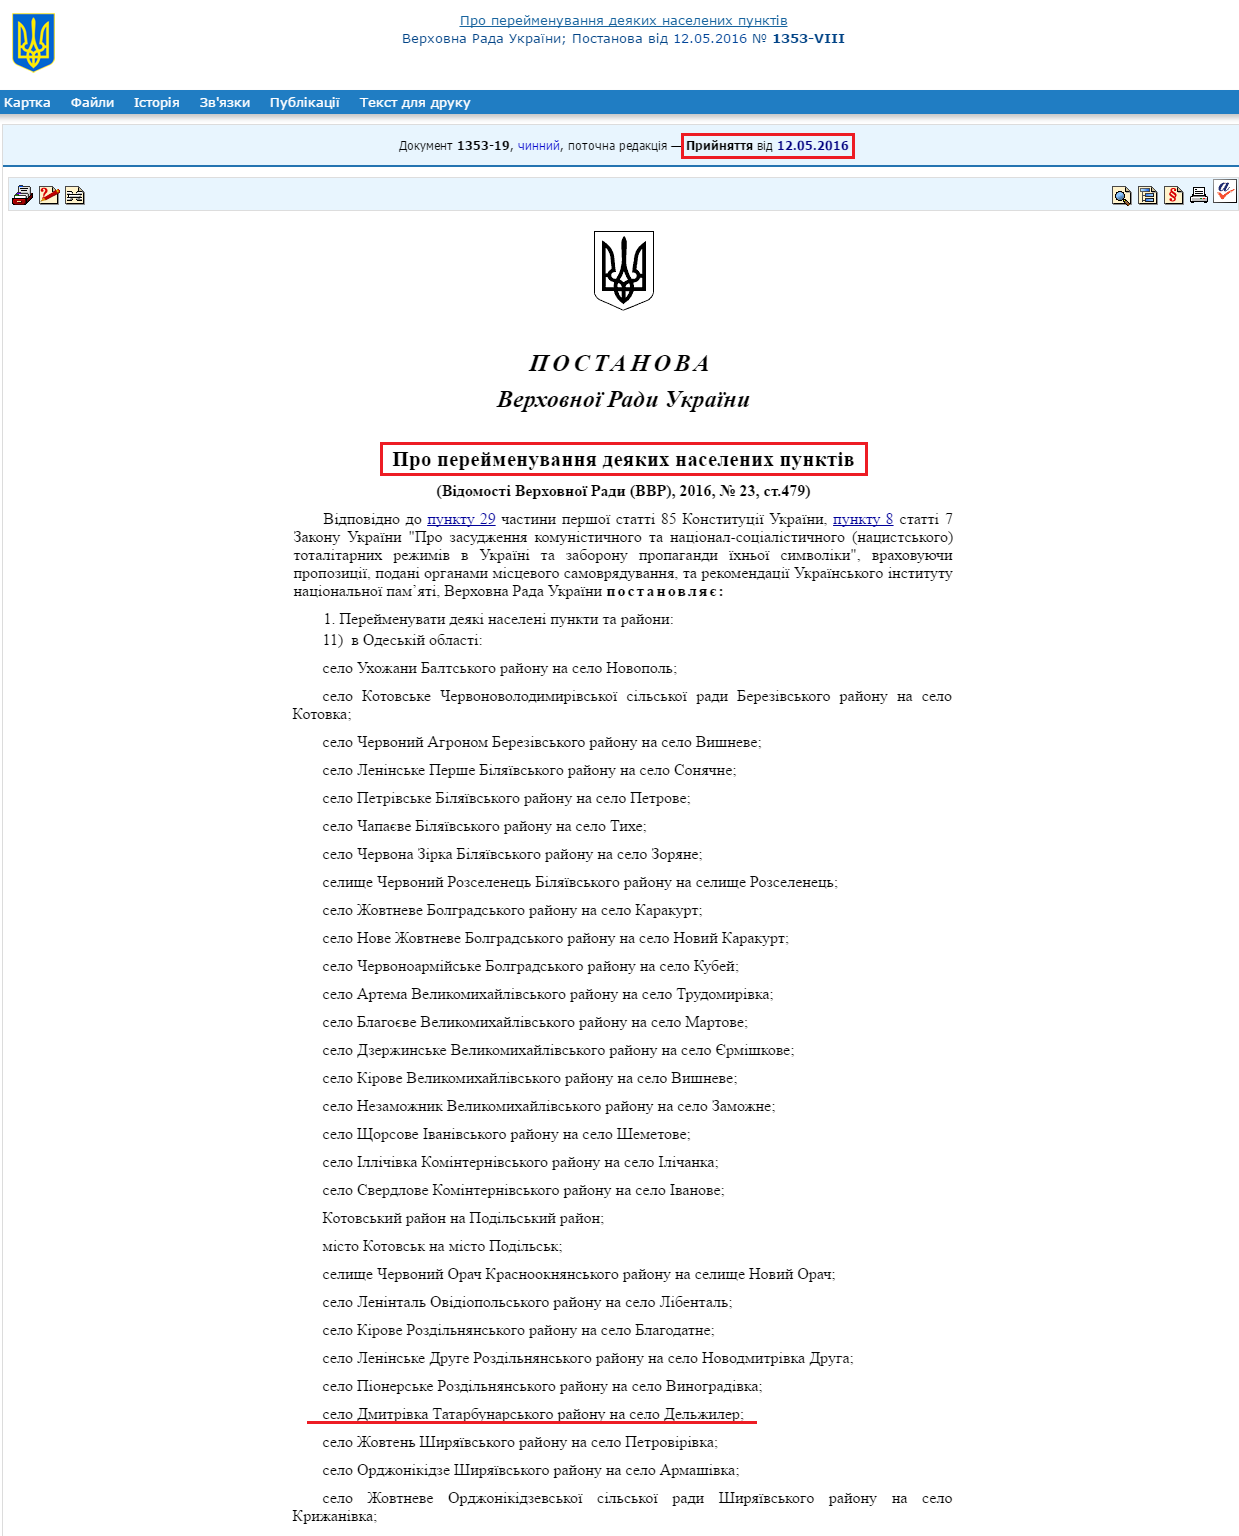 http://zakon5.rada.gov.ua/laws/show/1353-19